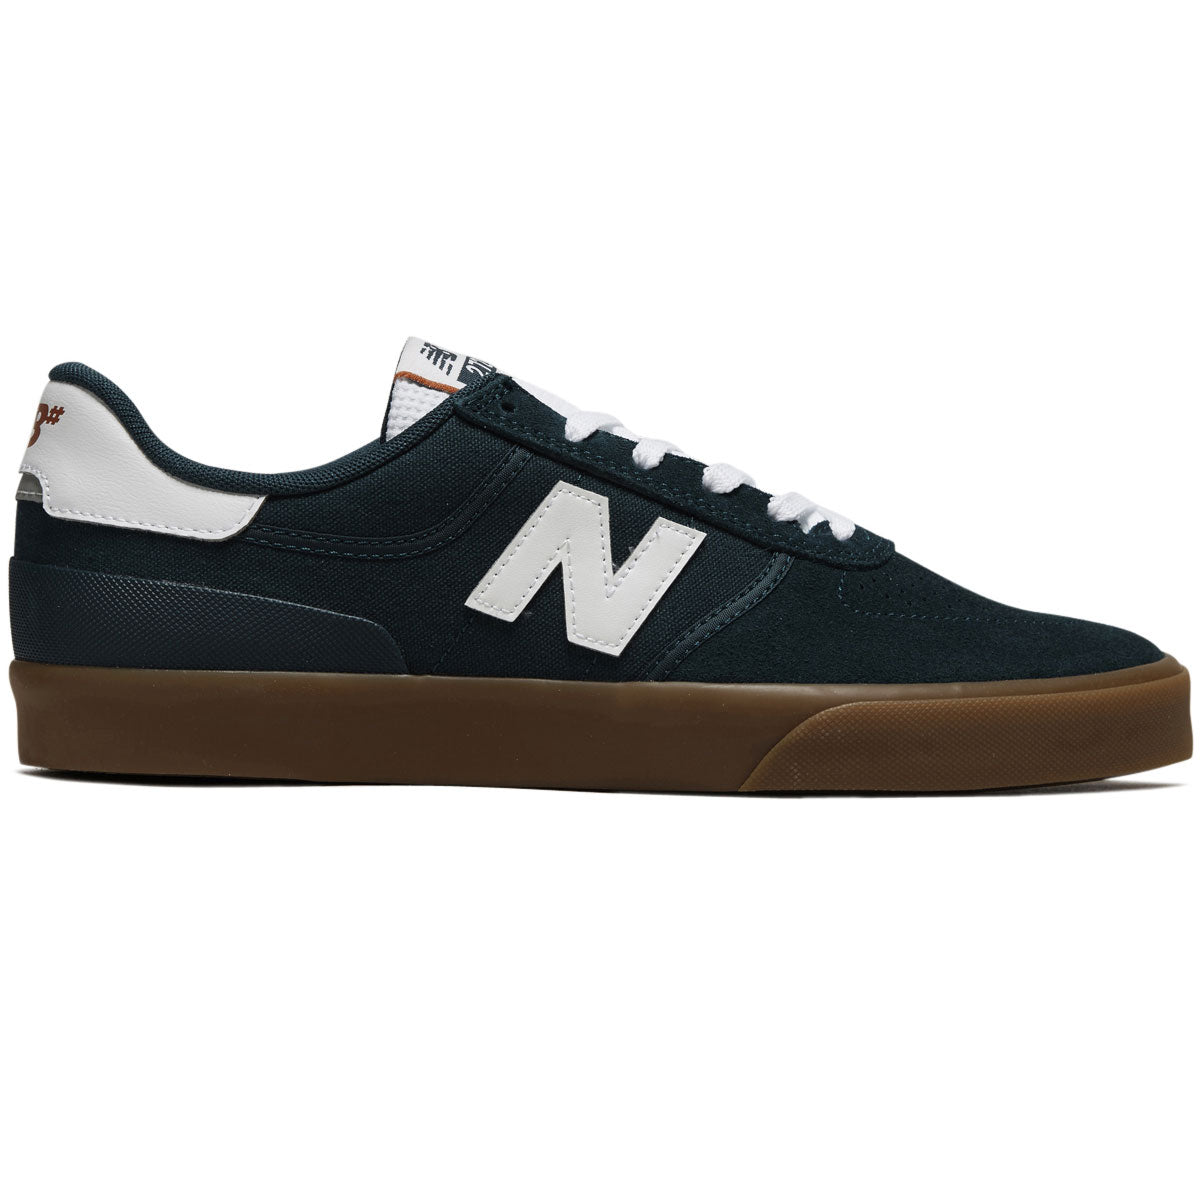 New Balance 272 Shoes - Vintage Teal/Gum image 1